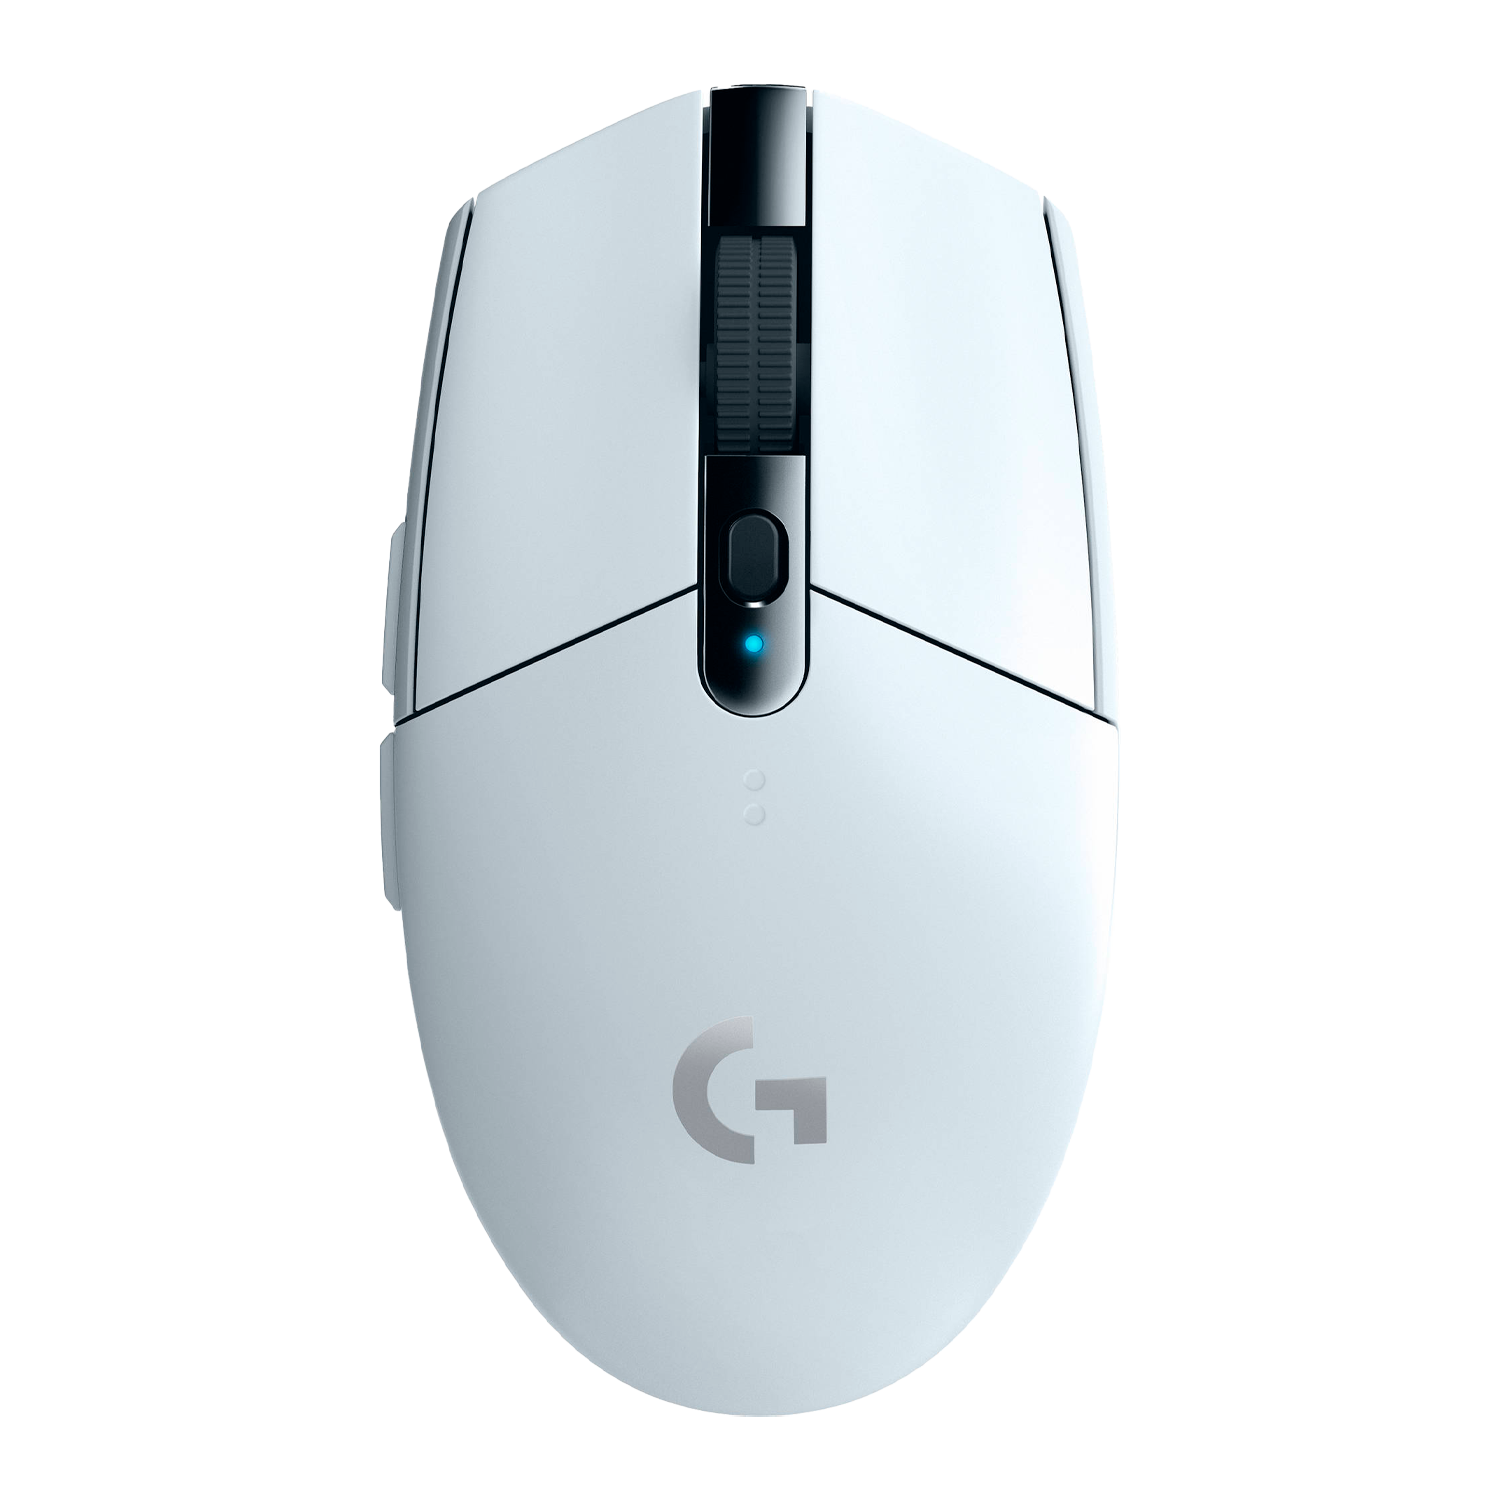 Mouse Gamer Logitech Sem Fio G305 Lightspeed - Branco (910-005289)